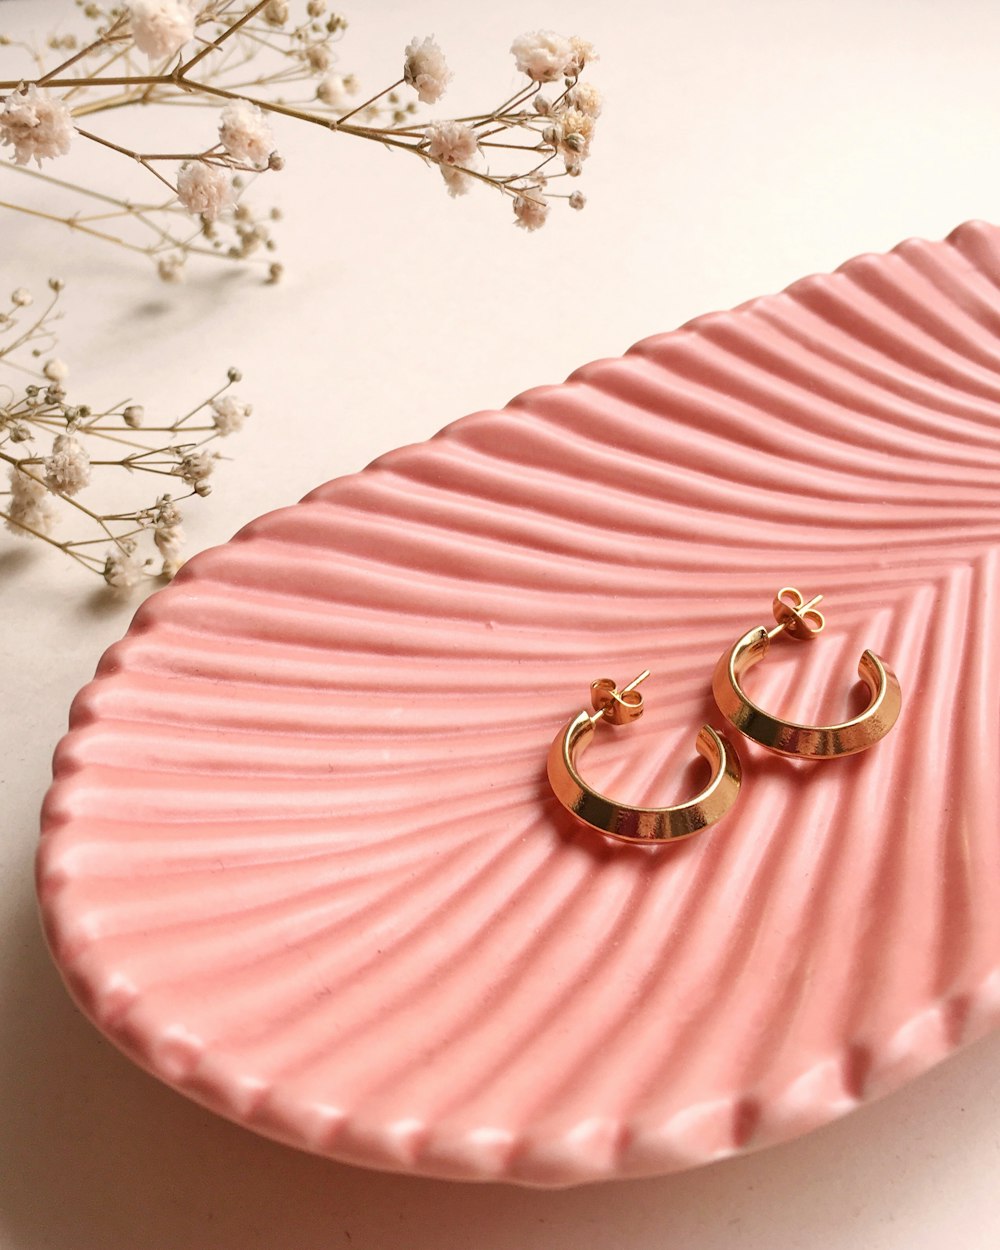 anelli d'oro e d'argento su tessuto a righe rosa e bianche